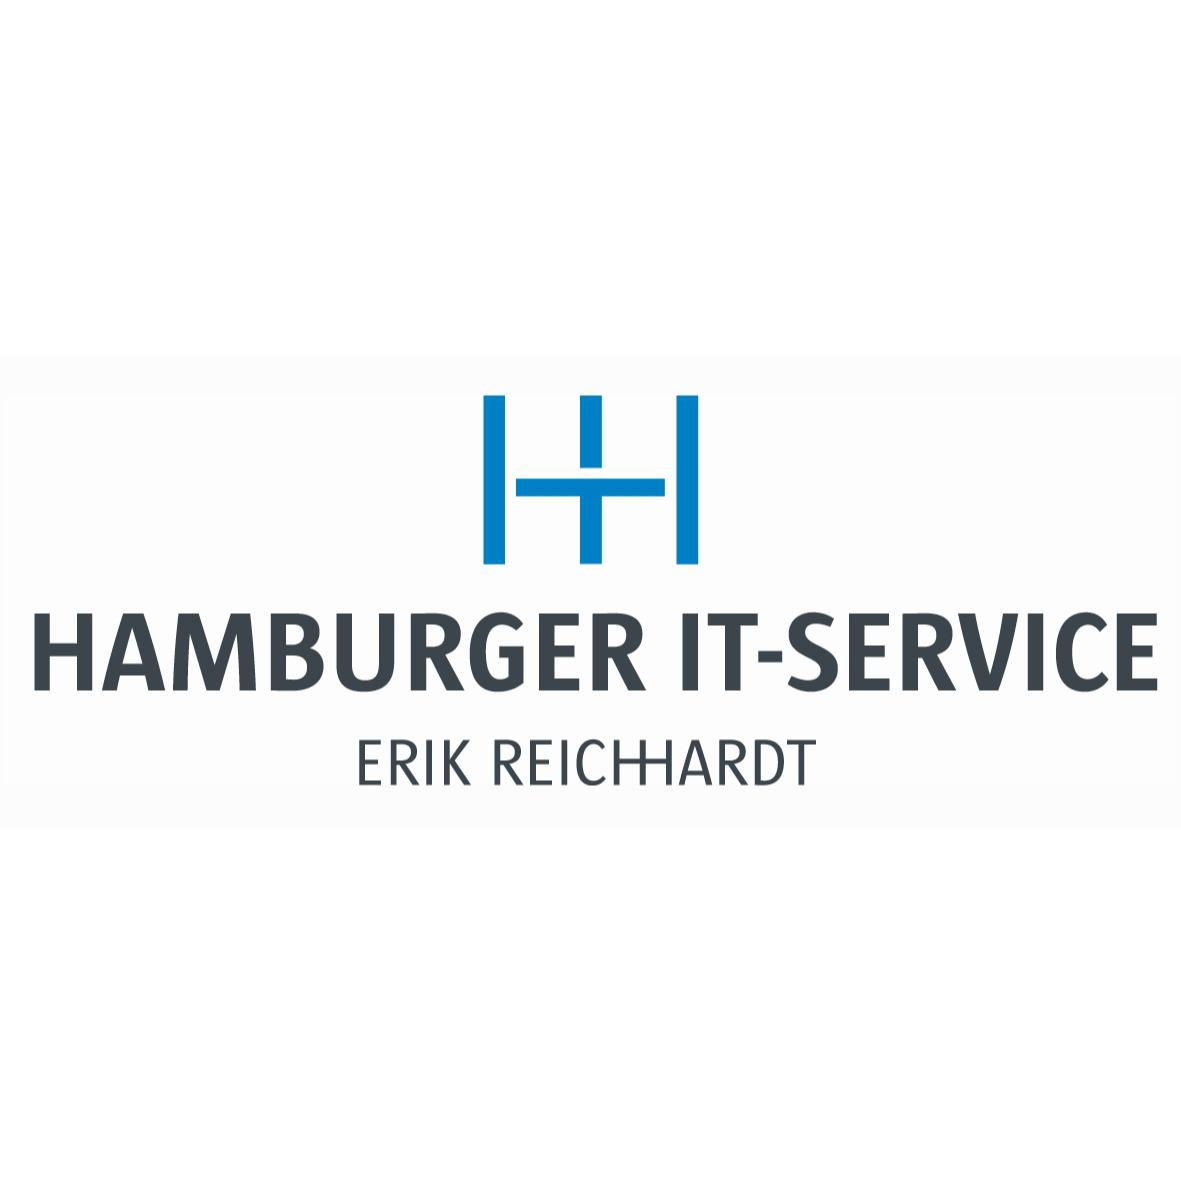 Hamburger IT-Service Erik Reichhardt in Hamburg